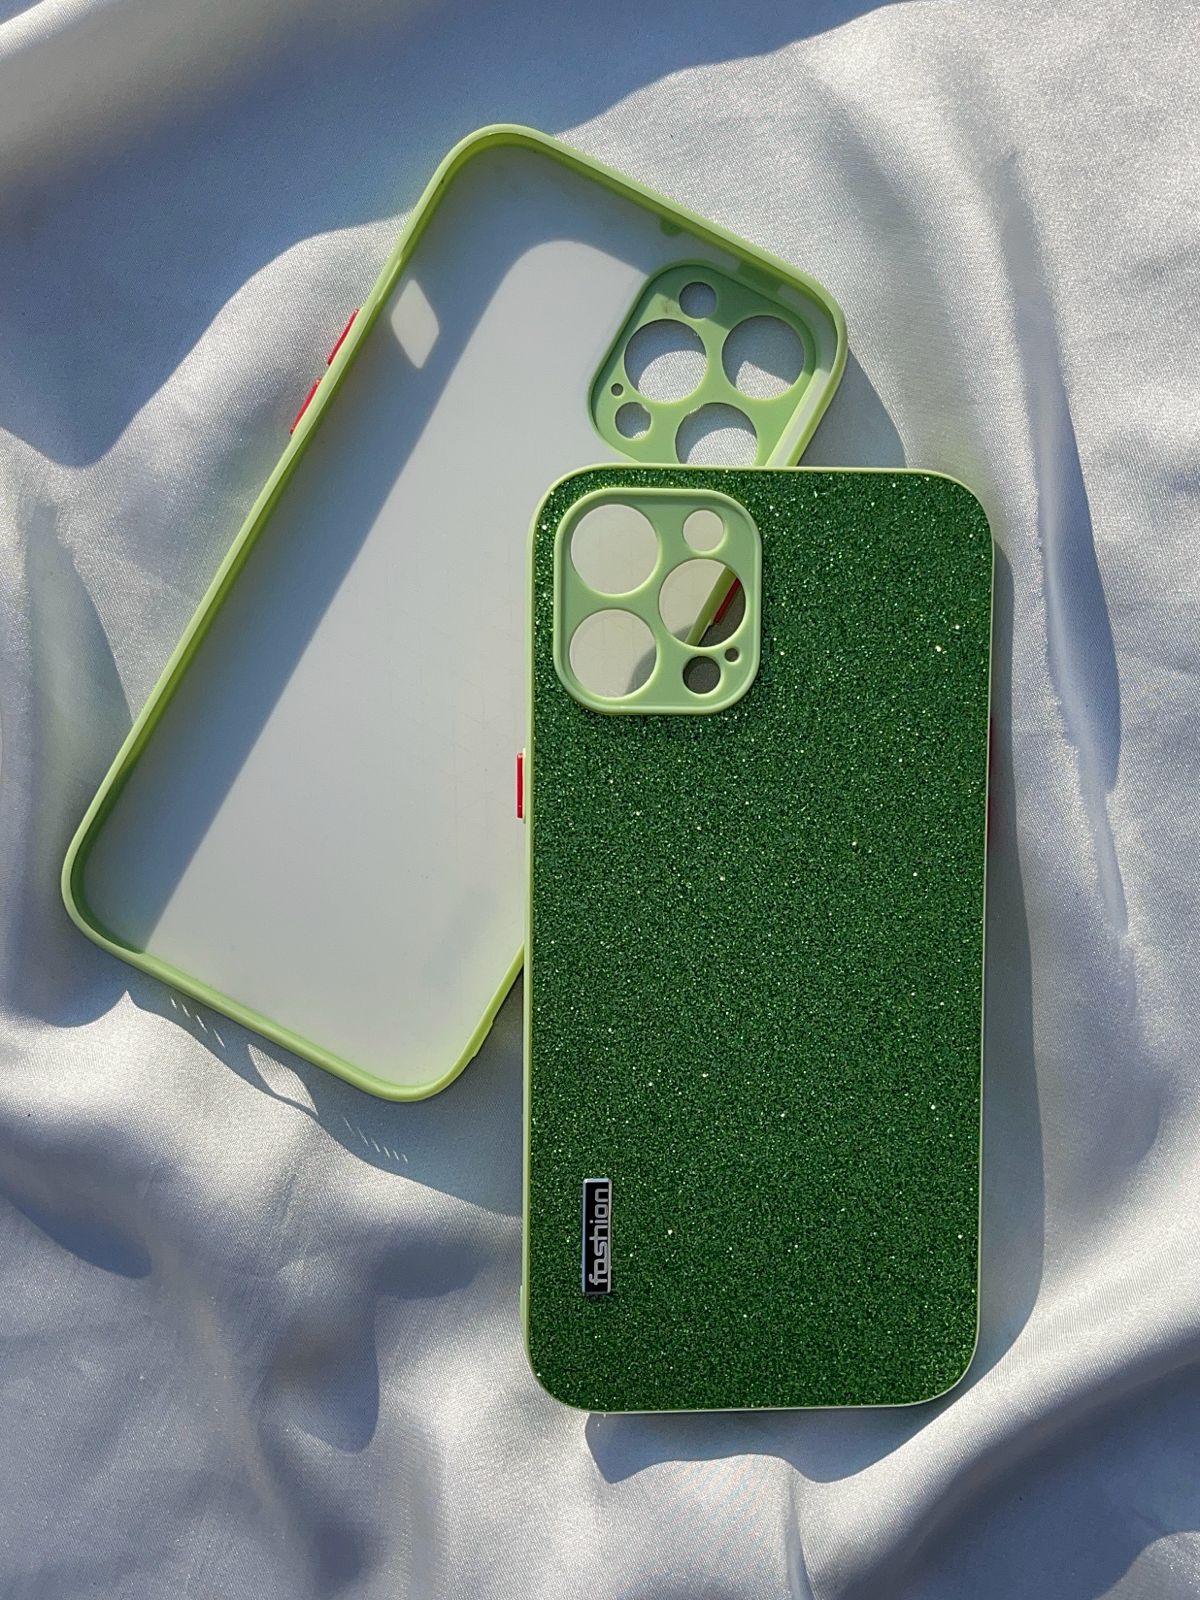 iPhone "12 Pro Max" Glitter Sparkle Case